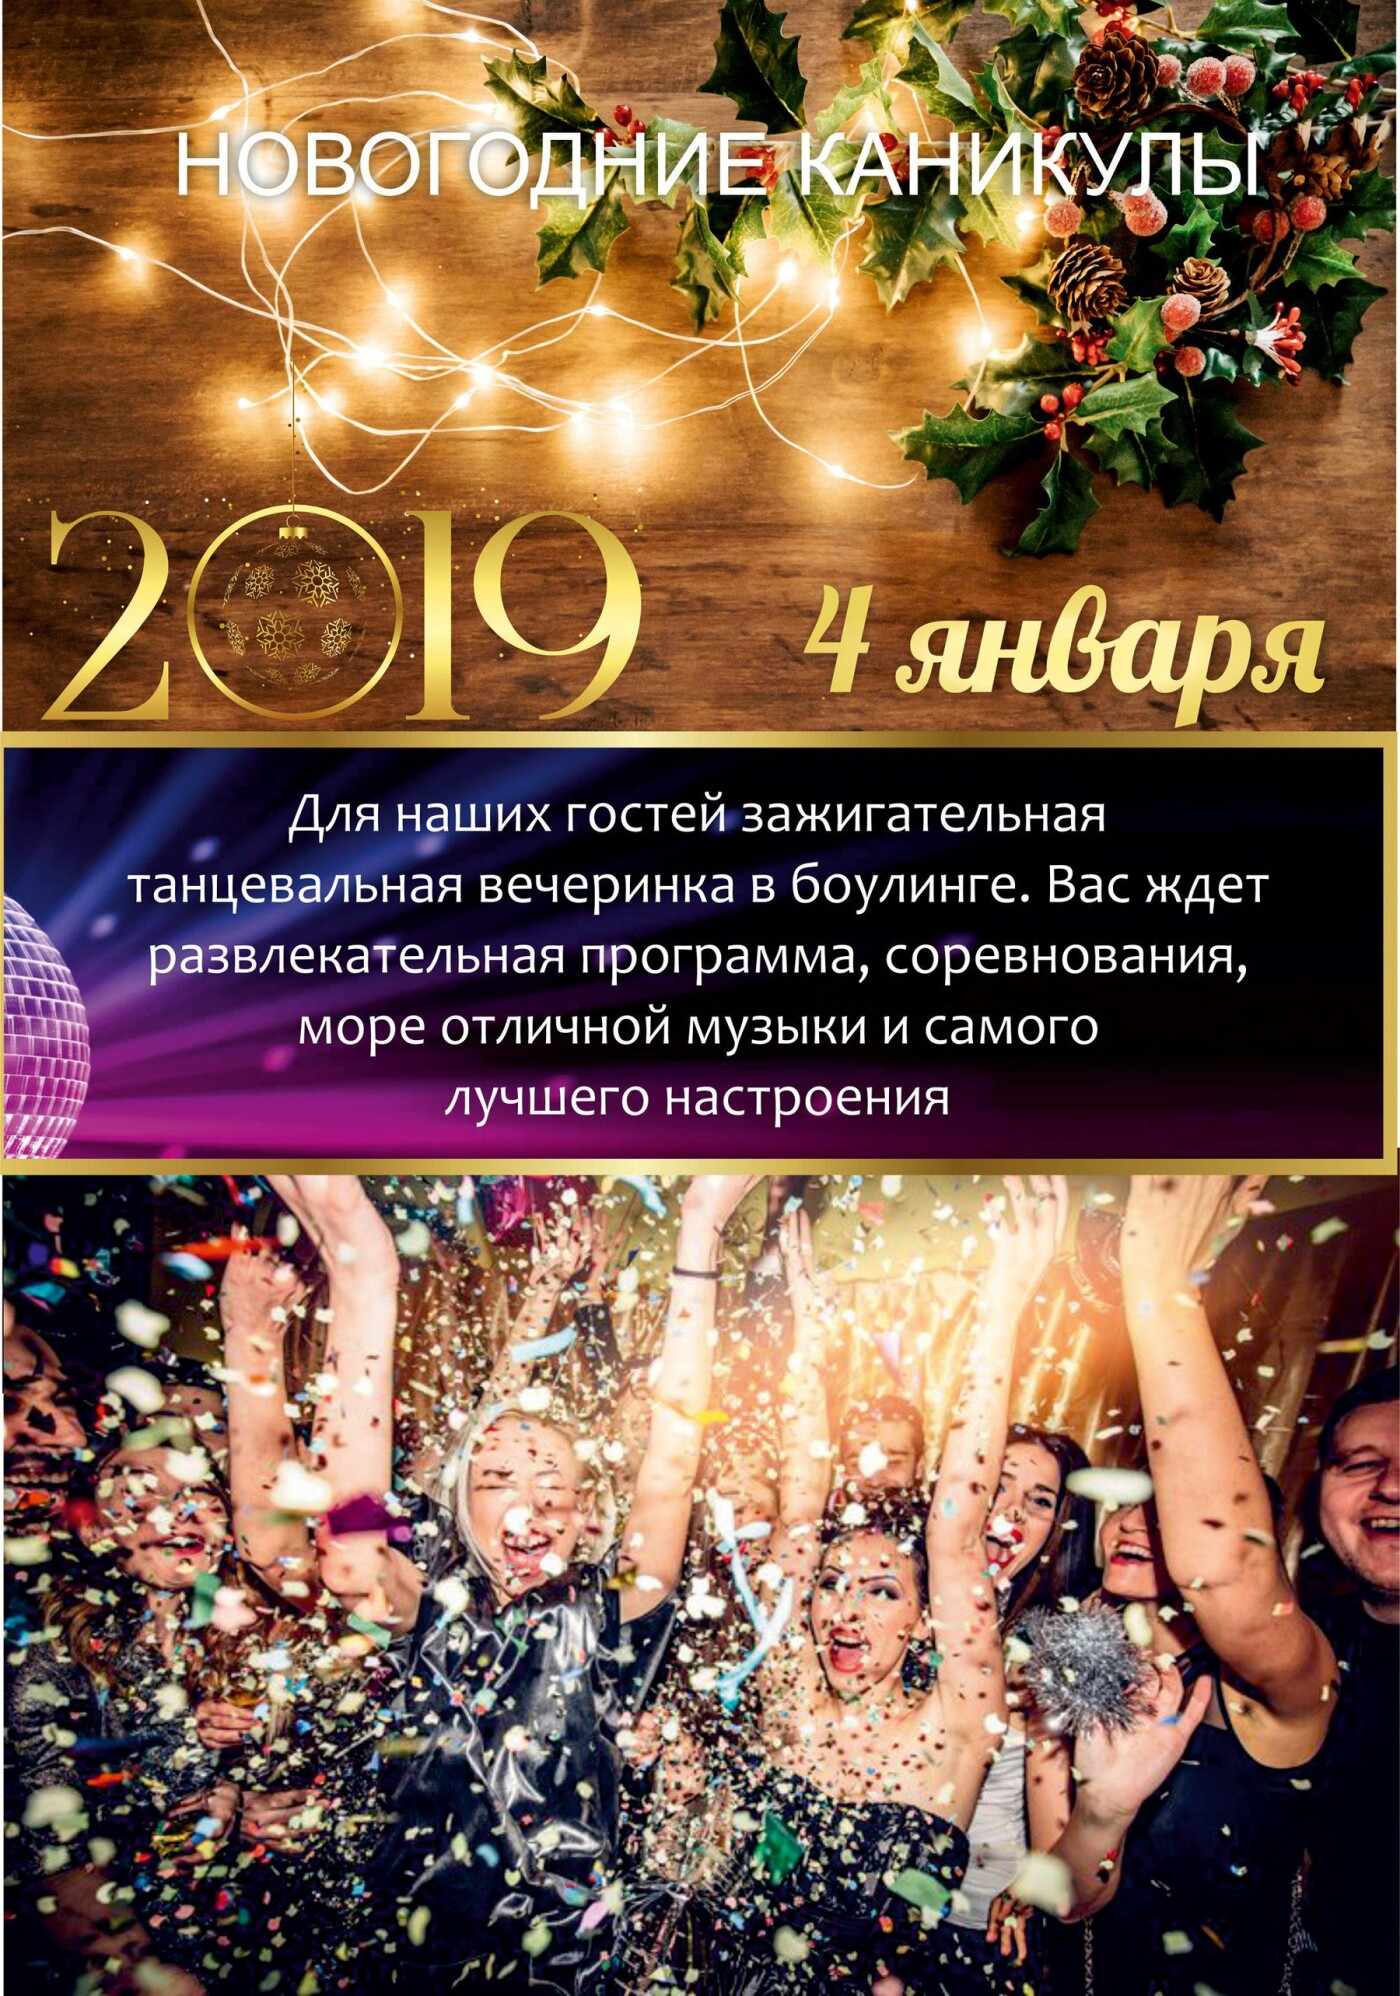 Встречайте Новый год-2019 всей семьей в санатории «Айвазовское»!, фото-6